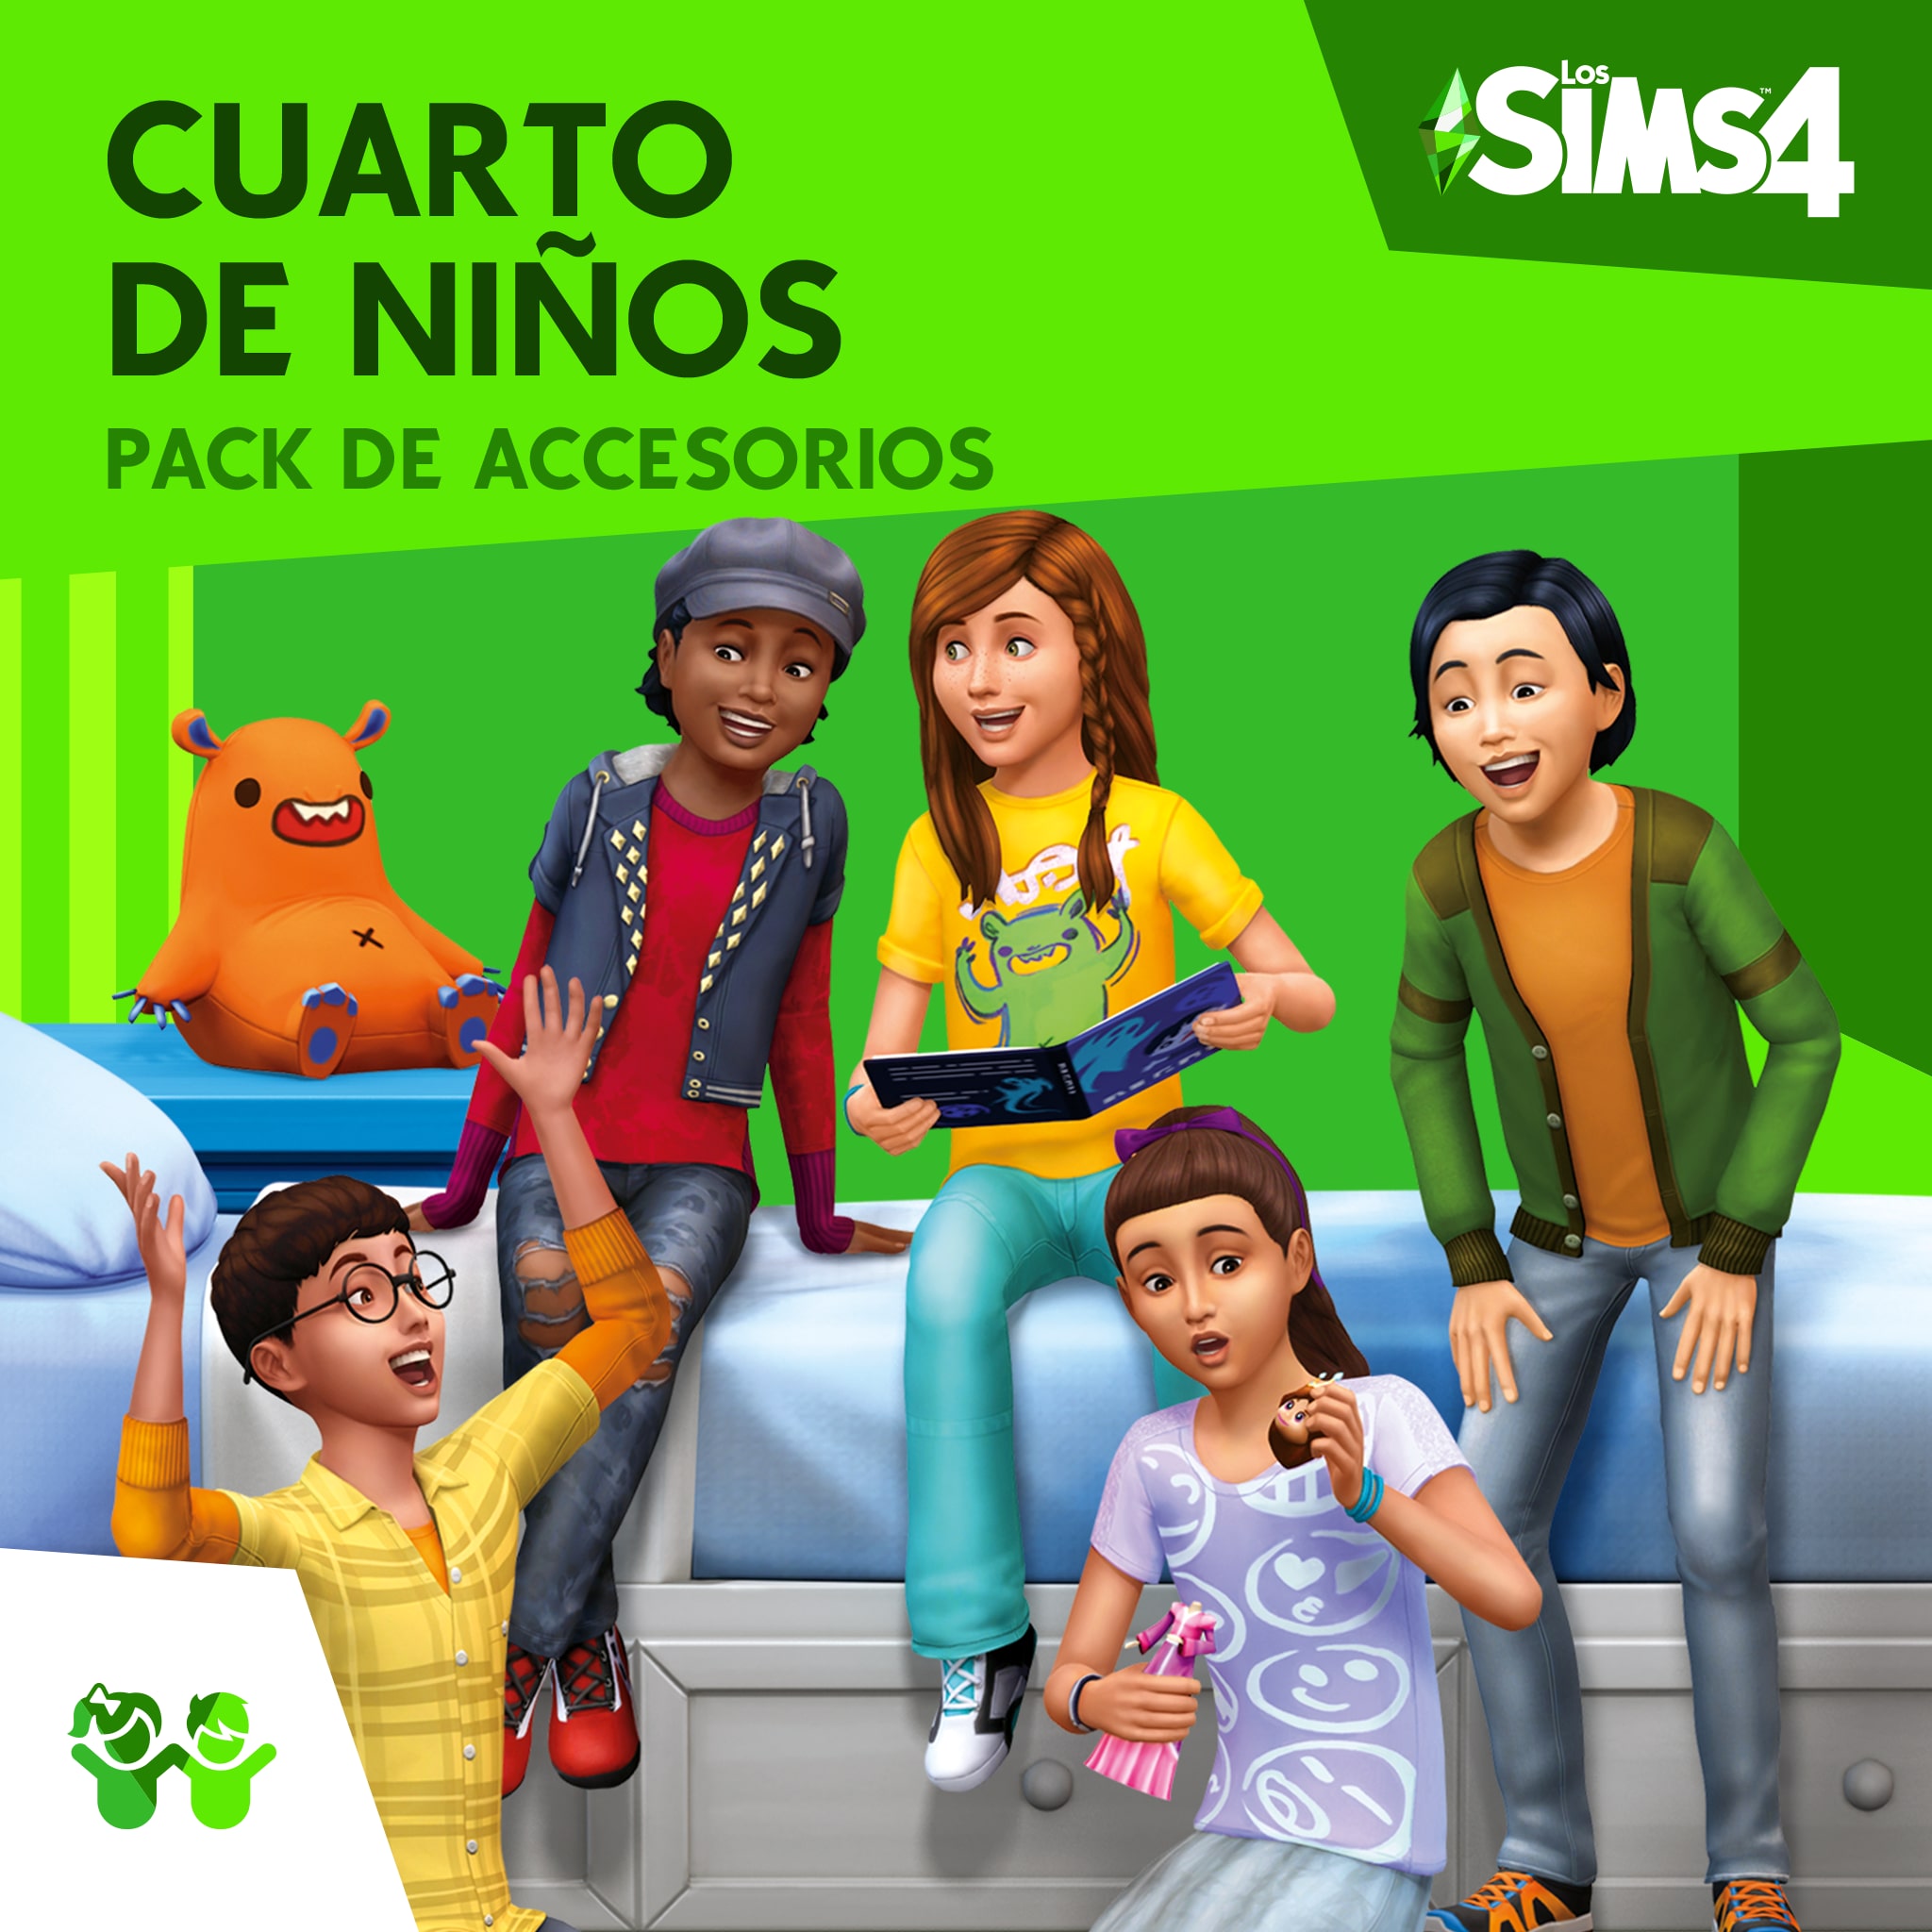 Los Sims™ 4 Cuarto de Niños Pack de Accesorios